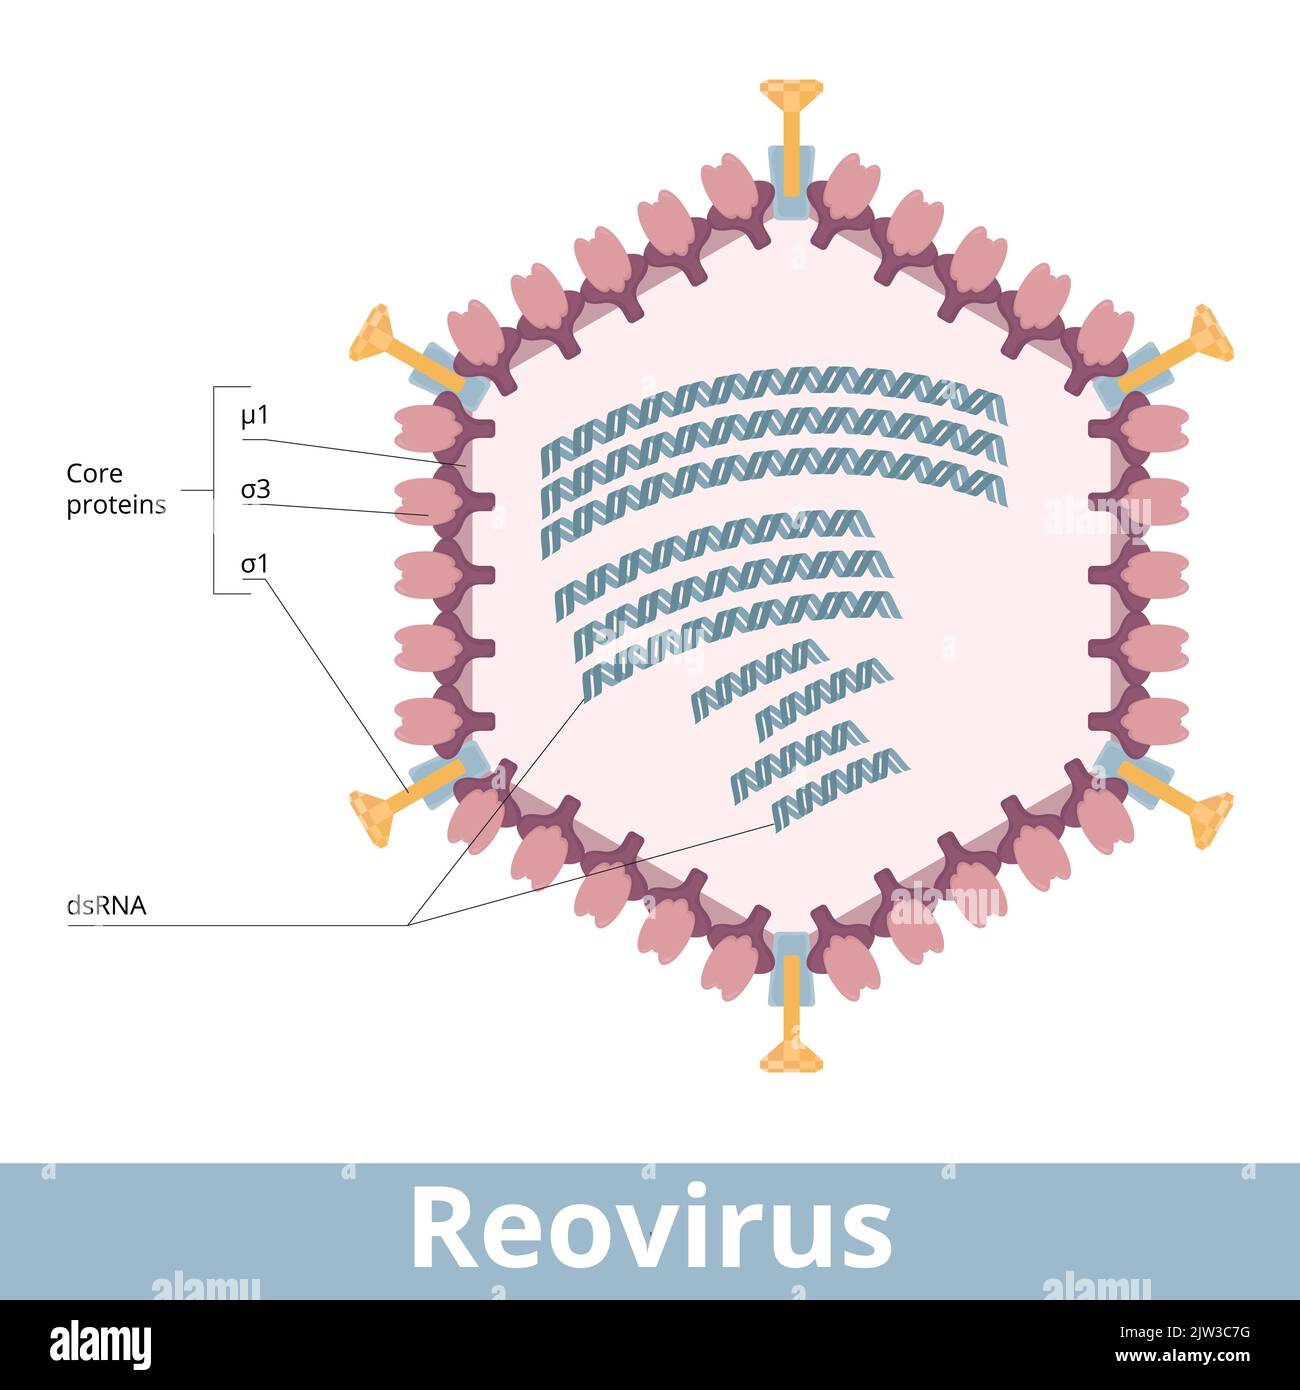 Reovirus. Viruszelle einer Familie doppelsträngiger RNA-Viren. Virion mit einer Ikosaedralkapside, doppelsträngiger RNA, Genomsegmenten. Stock Vektor